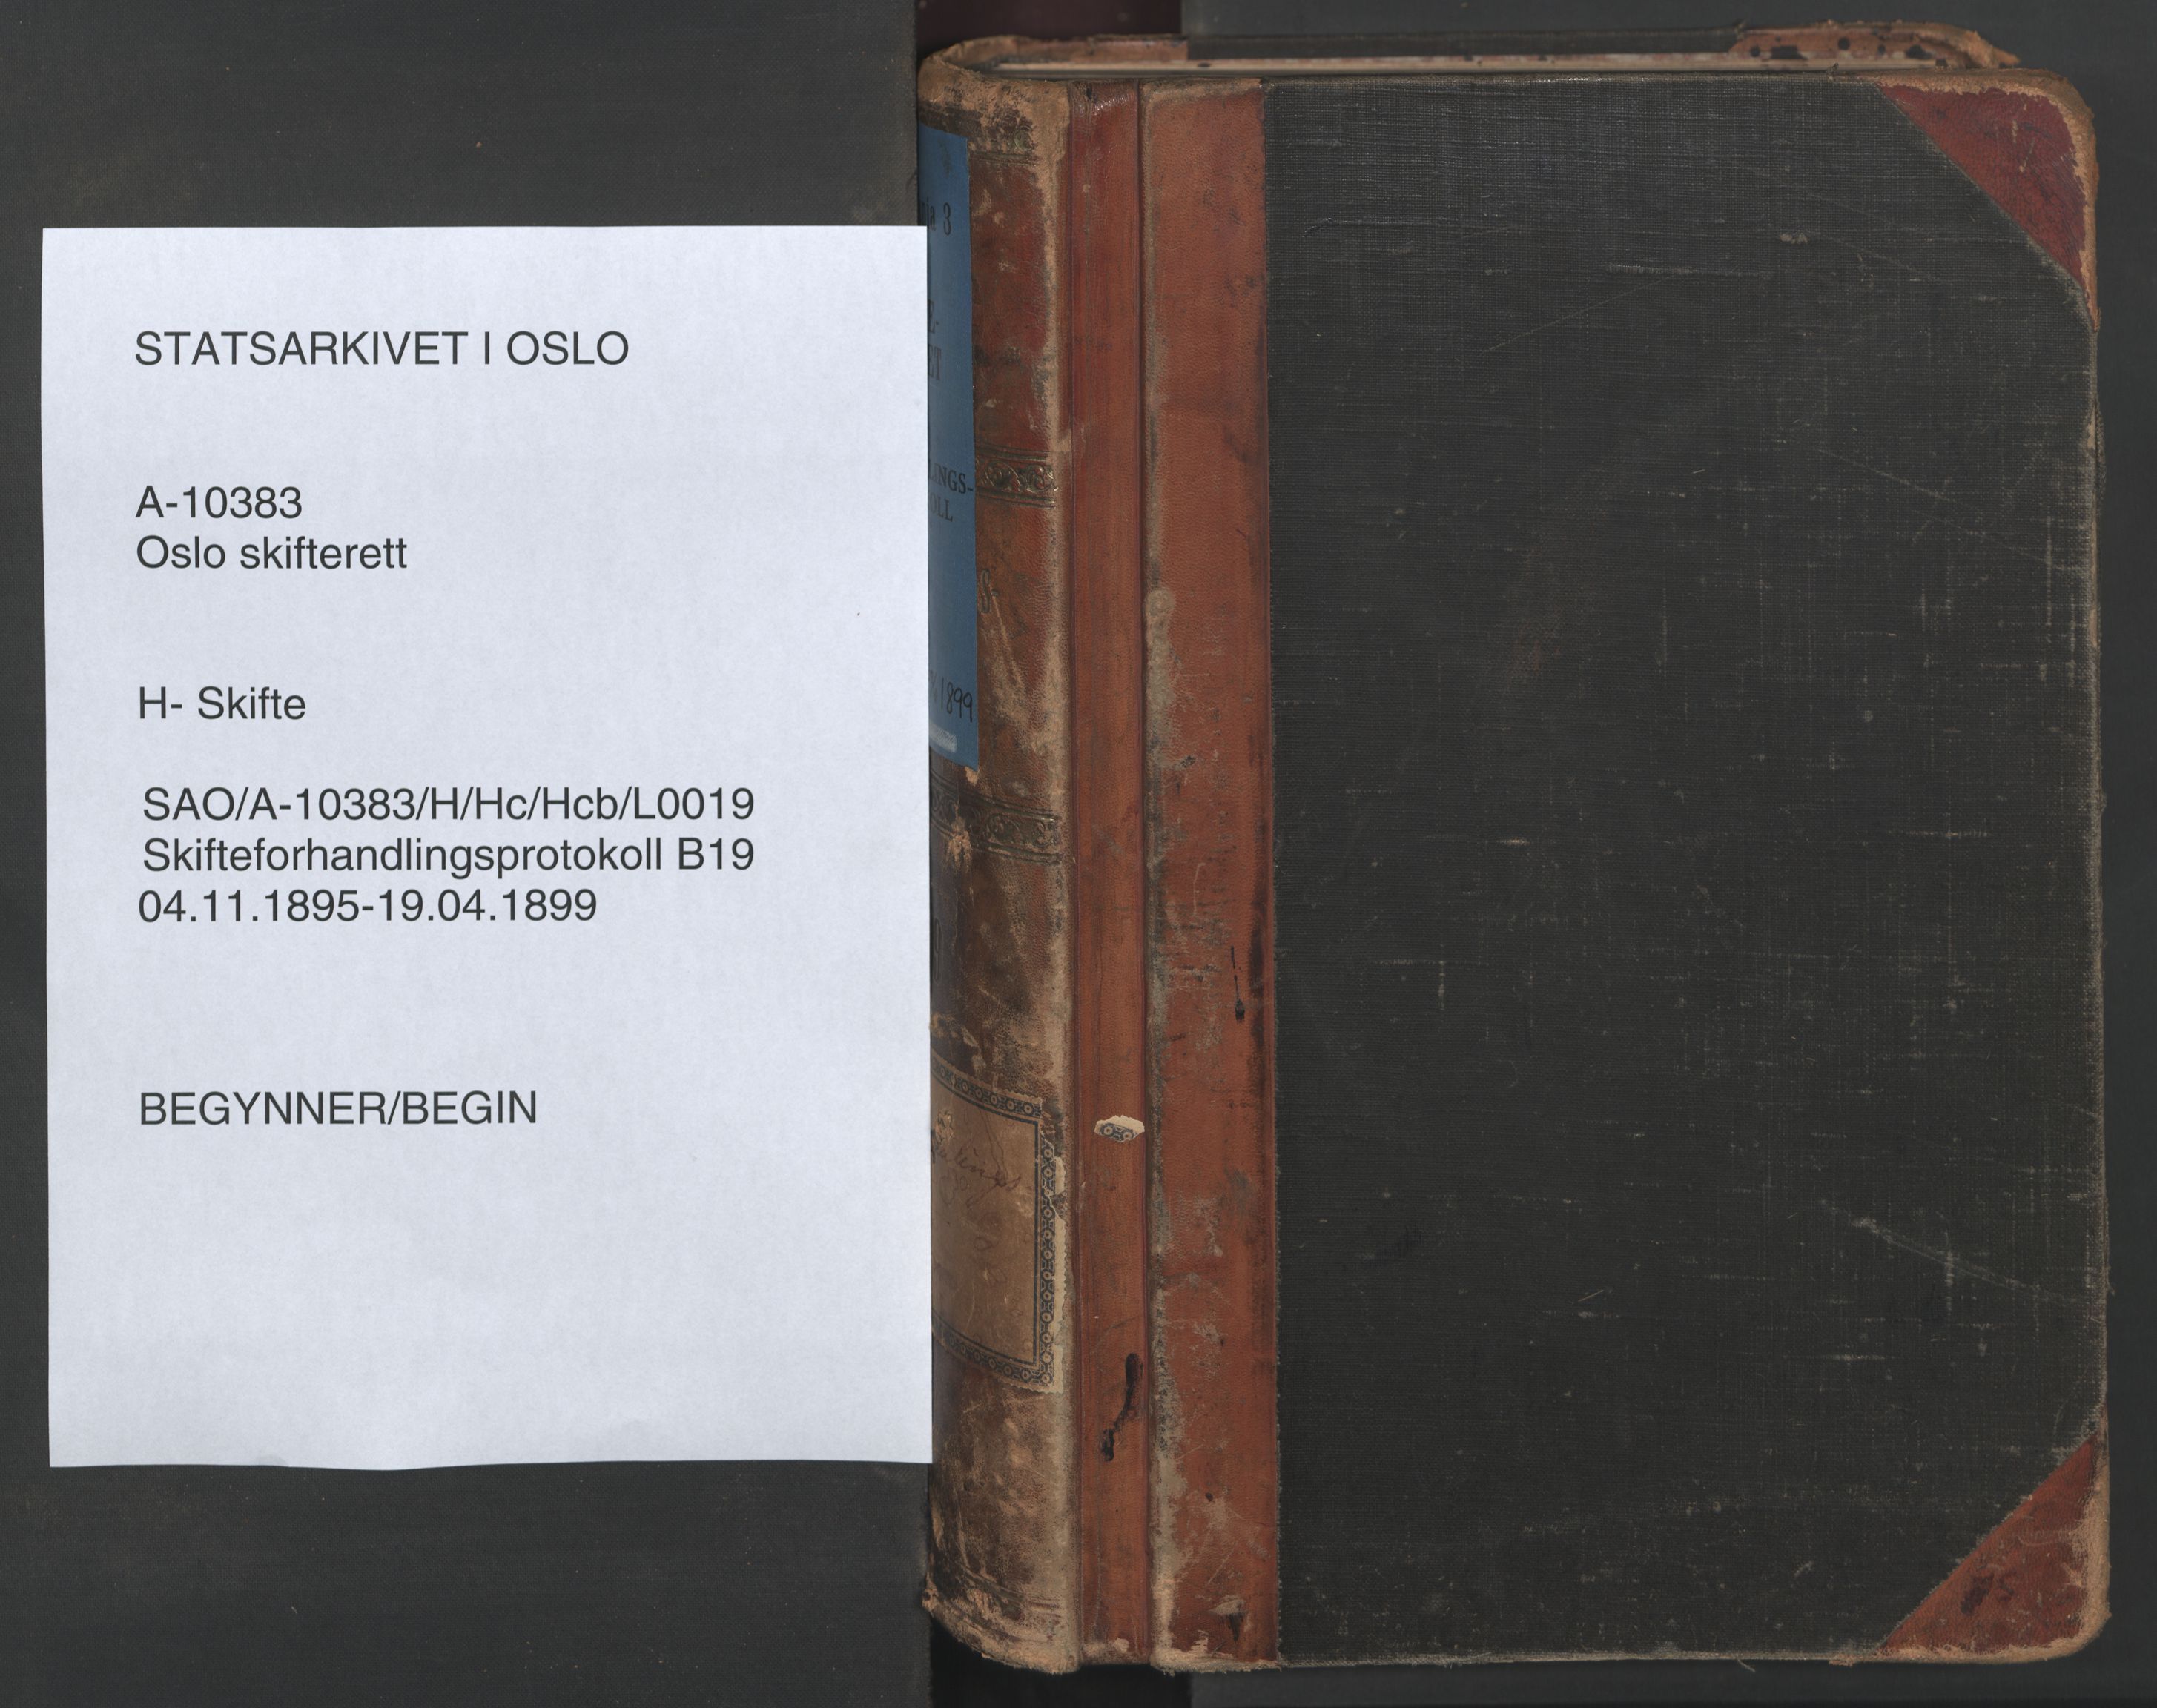 Oslo skifterett, SAO/A-10383/H/Hc/Hcb/L0019: Skifteforhandlingsprotokoll, 1895-1899